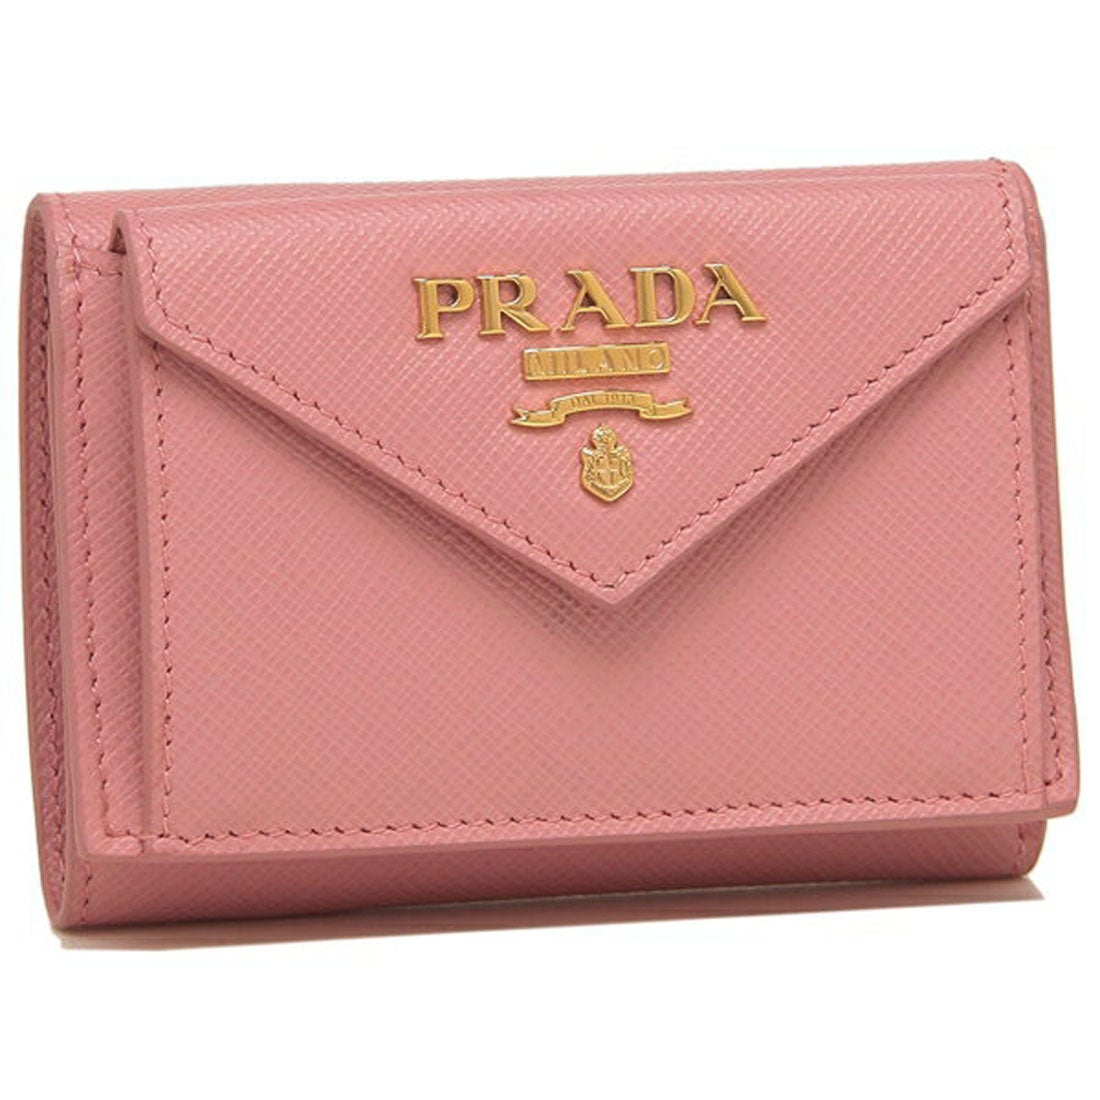 プラダ ピンク 財布